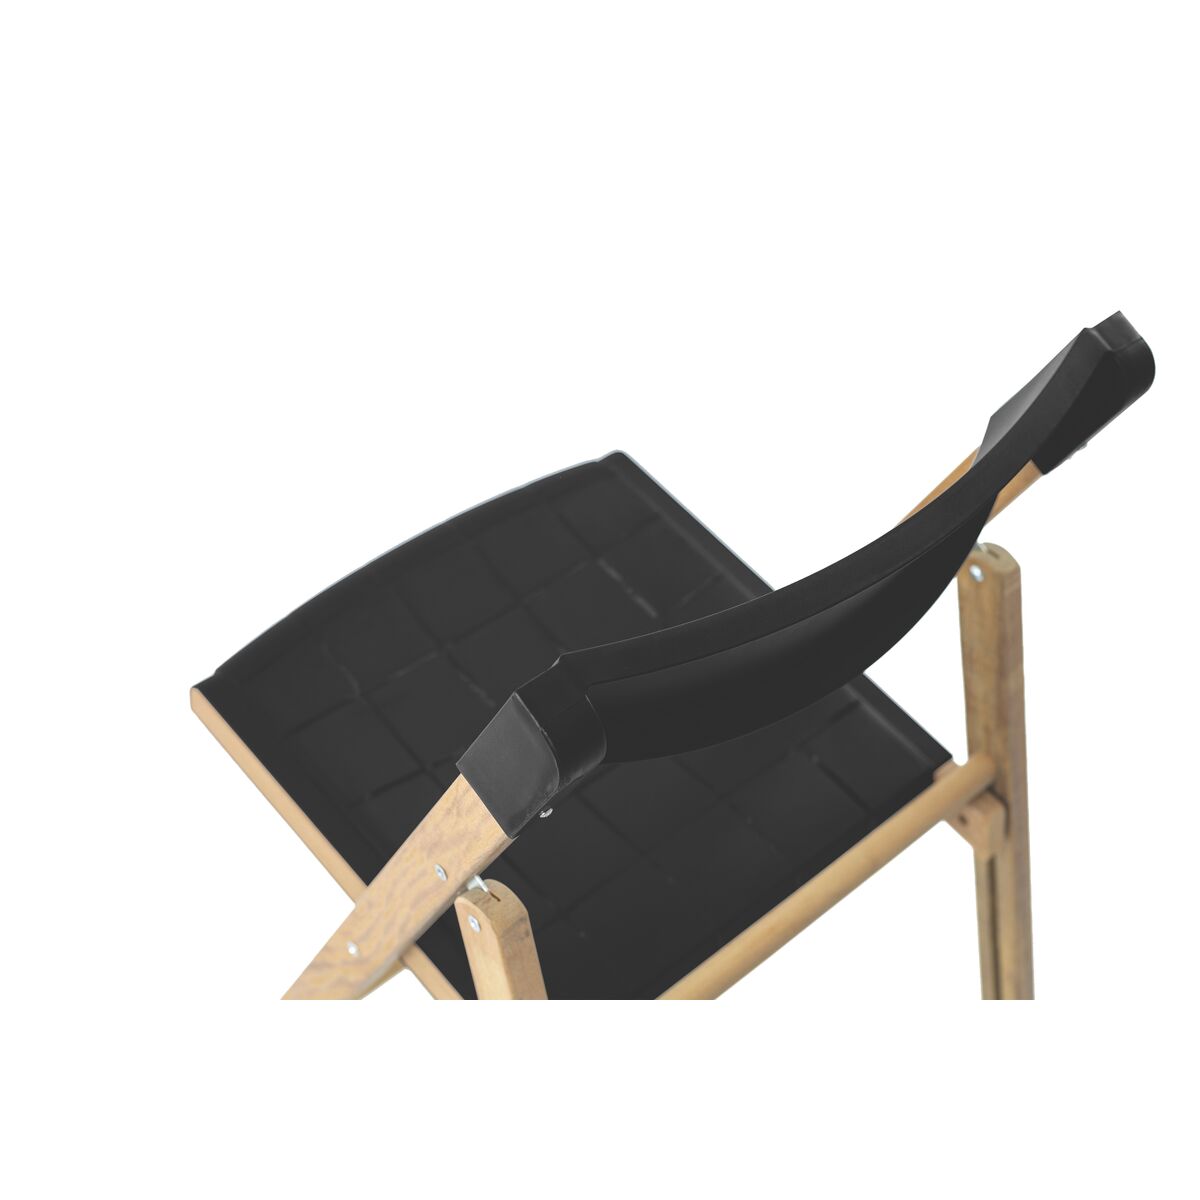 Conjunto de Cadeiras e Mesa de Madeira Tramontina Potenza Dobrável em  Madeira Teca com Acabamento Natural e Polipropileno Grafite 5 Peças de  Qualidade em Promoção